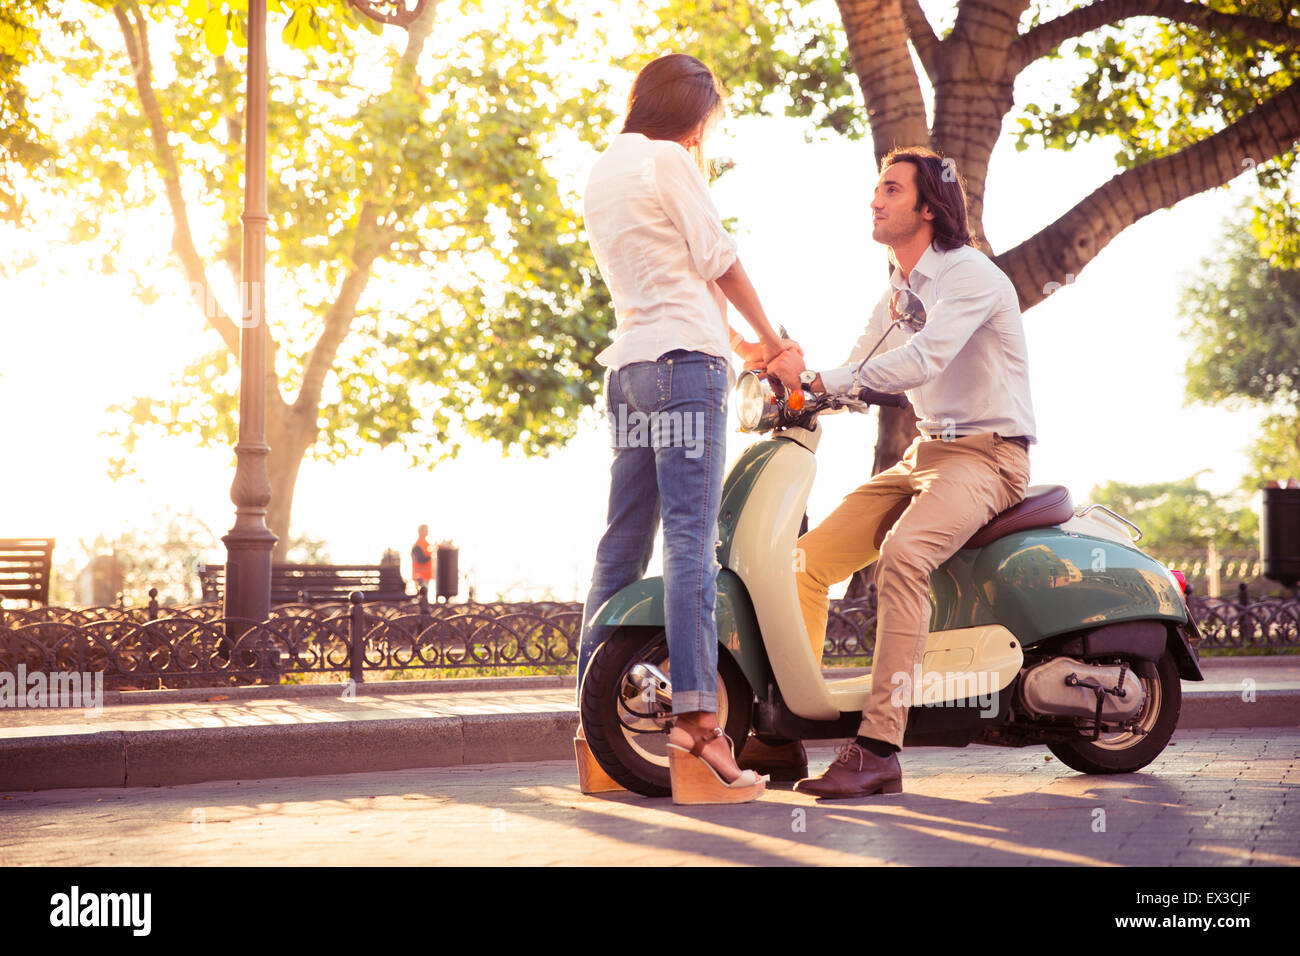 Jeune couple romantique glissant sur un scooter à l'extérieur Banque D'Images